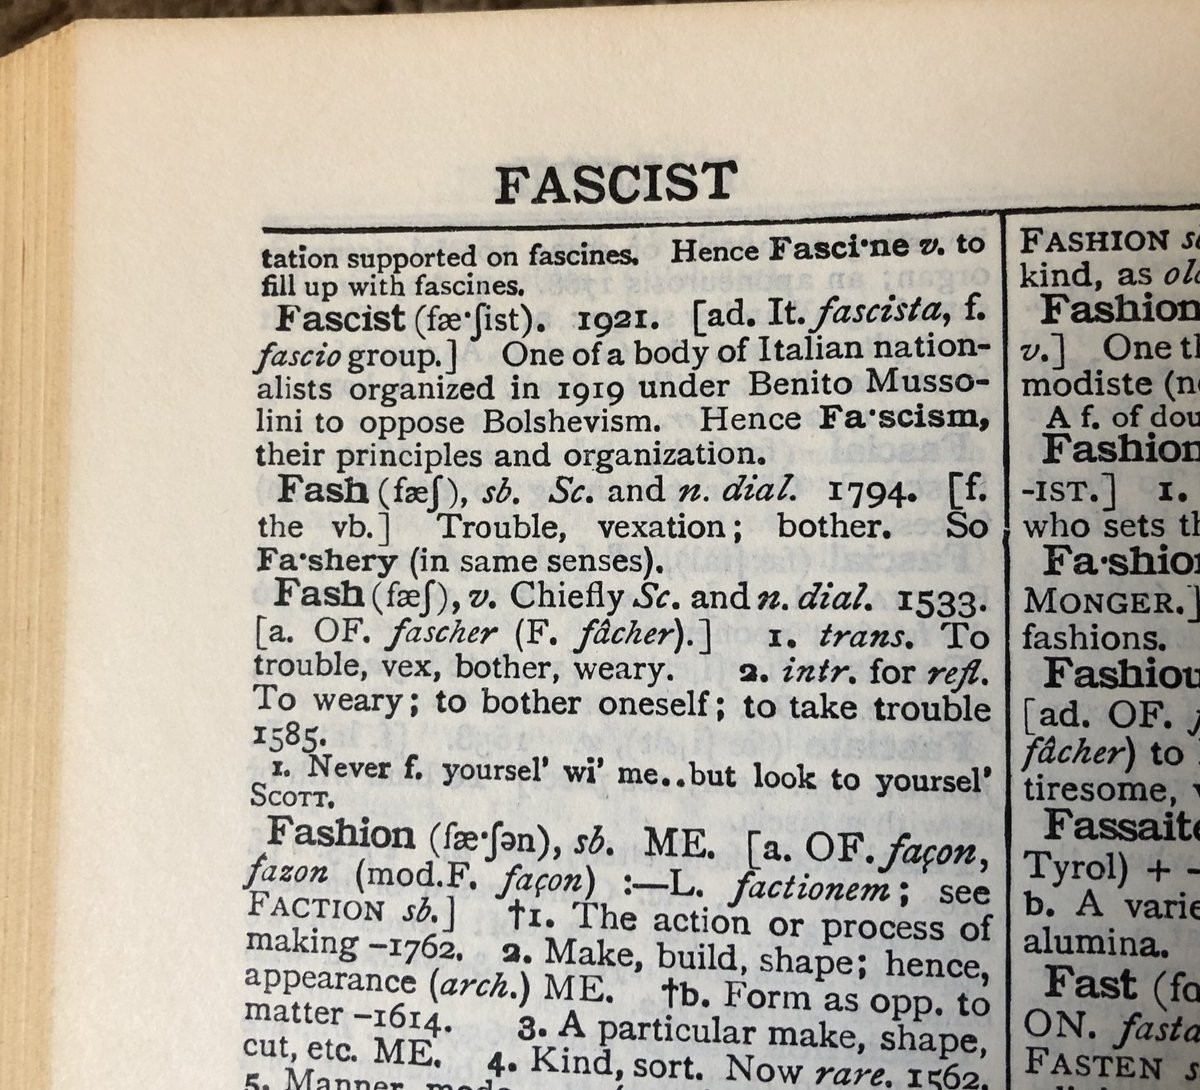 Fascist Definition as of 1921 Blank Meme Template